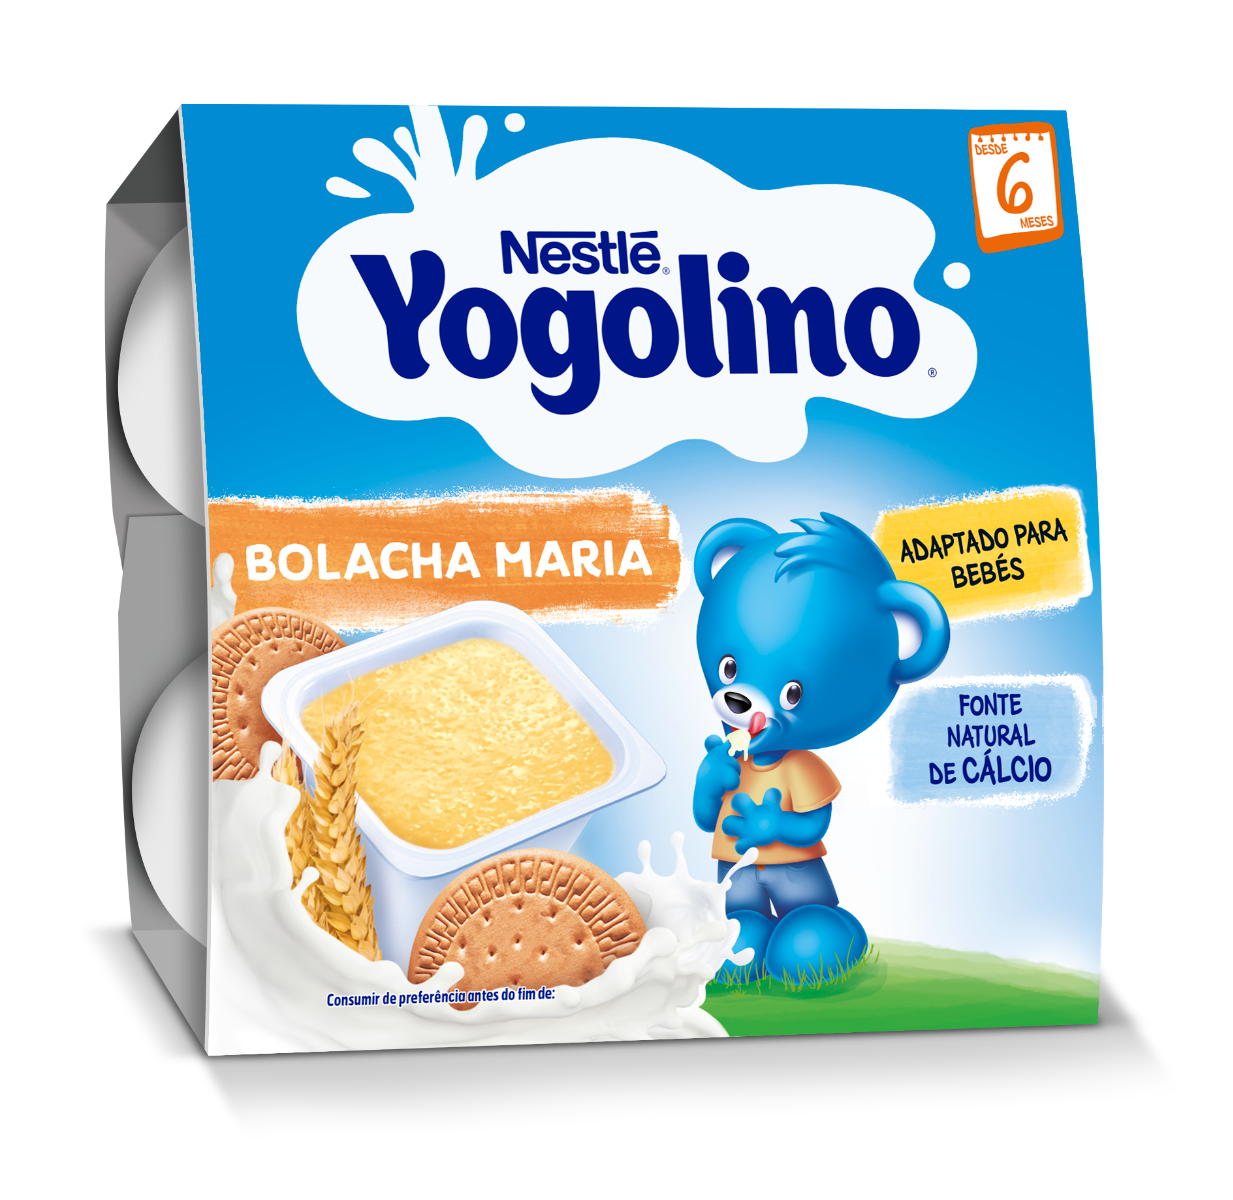 Gustare gris cu lapte si biscuiti Yogolino, 4 x 100g, Nestle